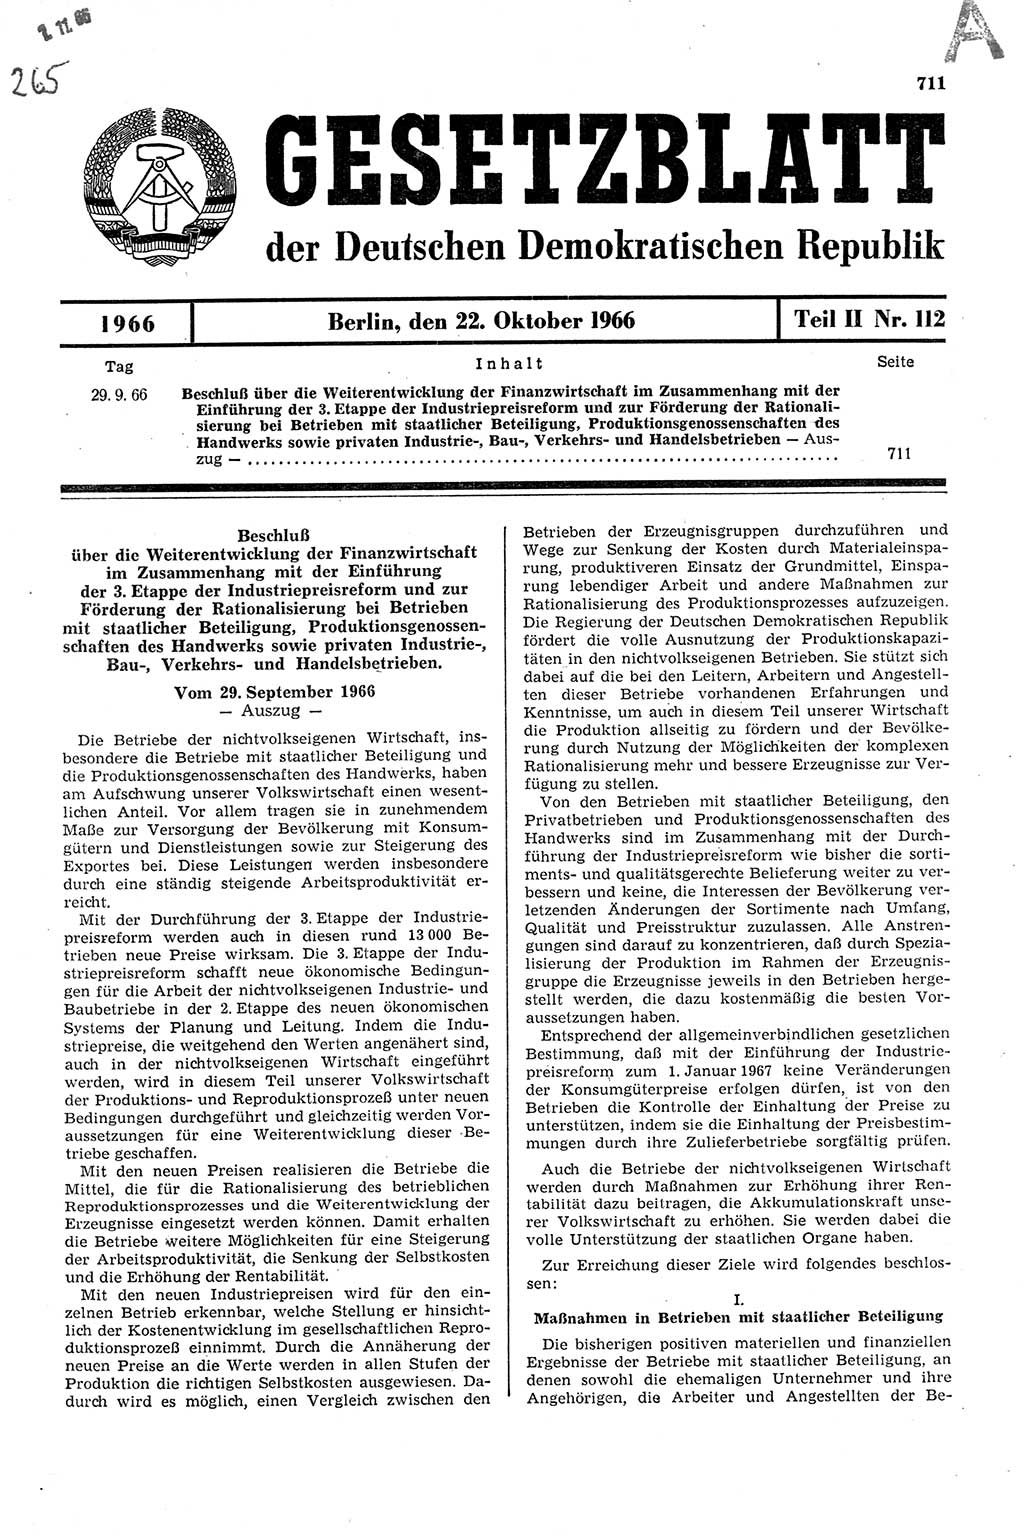 Gesetzblatt (GBl.) der Deutschen Demokratischen Republik (DDR) Teil ⅠⅠ 1966, Seite 711 (GBl. DDR ⅠⅠ 1966, S. 711)